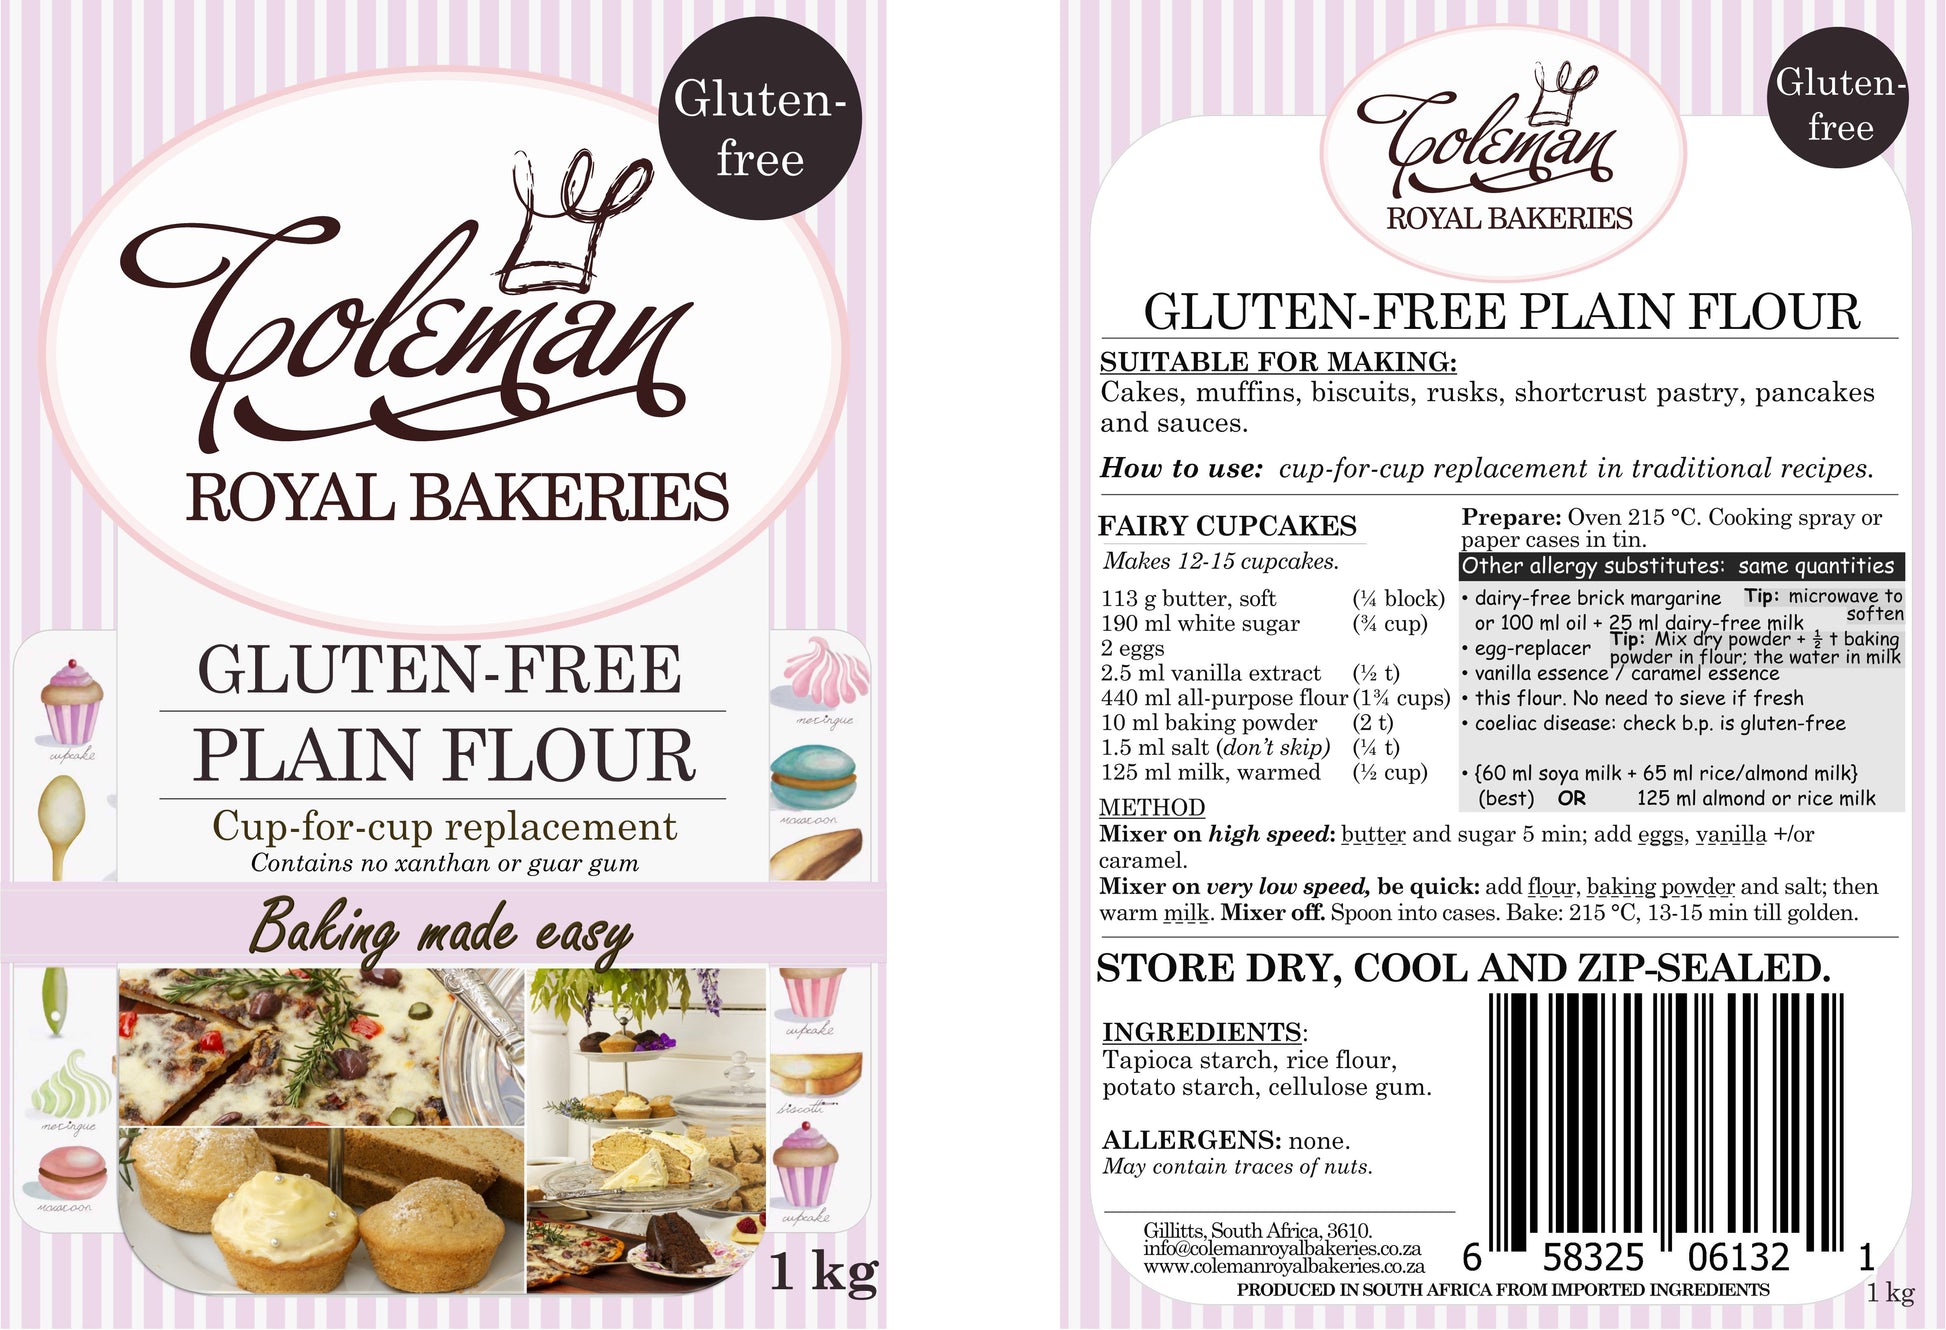 Gluten-free Plain Flour 1 kg - Coleman Royal Bakeries